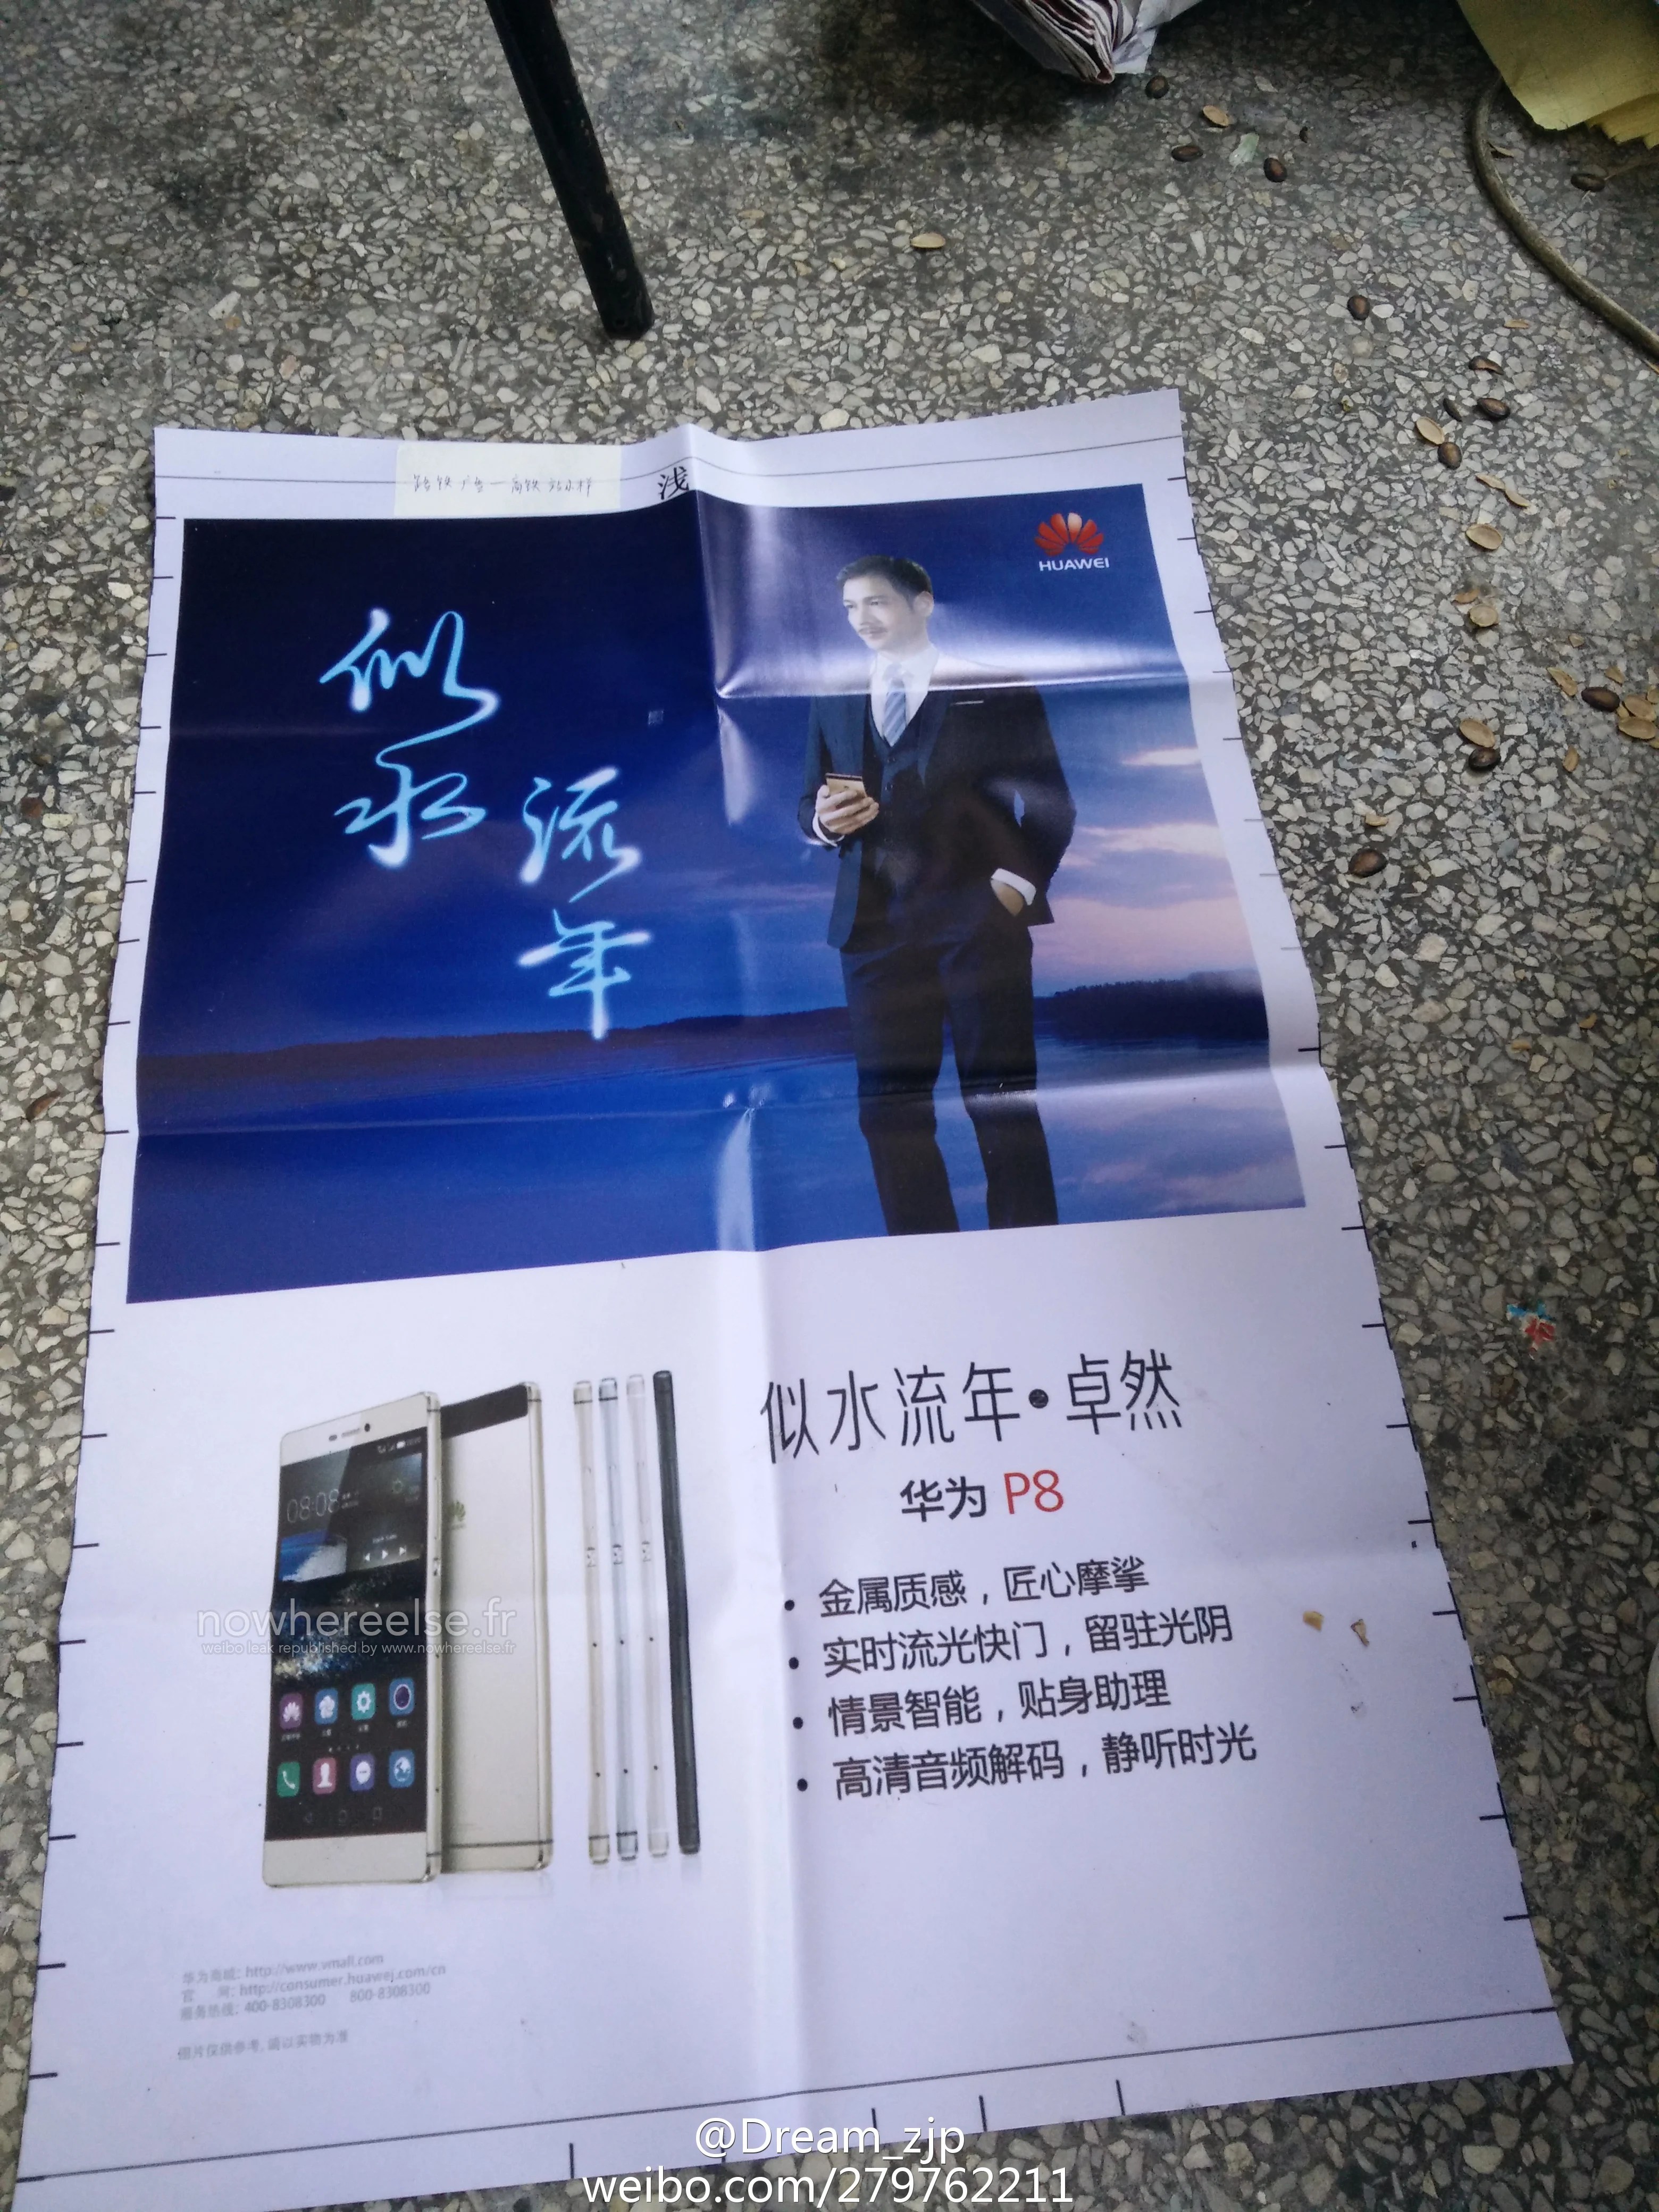 Le Huawei Ascend P8 se montre déjà dans ses quatre coloris